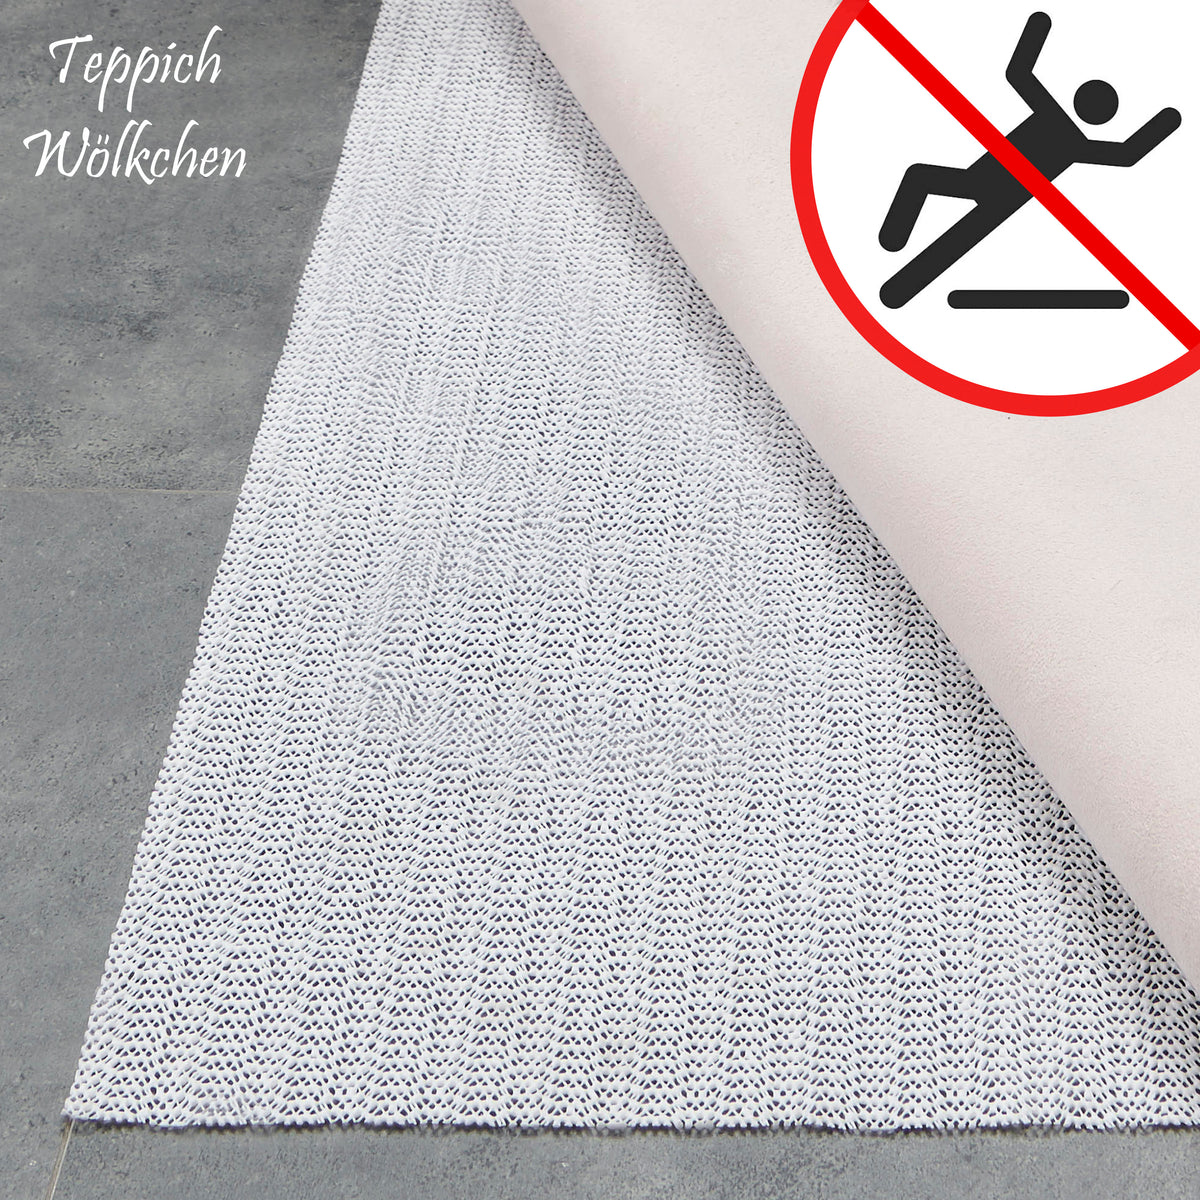 GDWD Teppich Antirutschunterlage, 4/8/12 Stück Antirutsch Pads,  Wiederverwendbarer Antirutschmatte für Teppich, Waschbarer Anti Rutsch  Unterlage